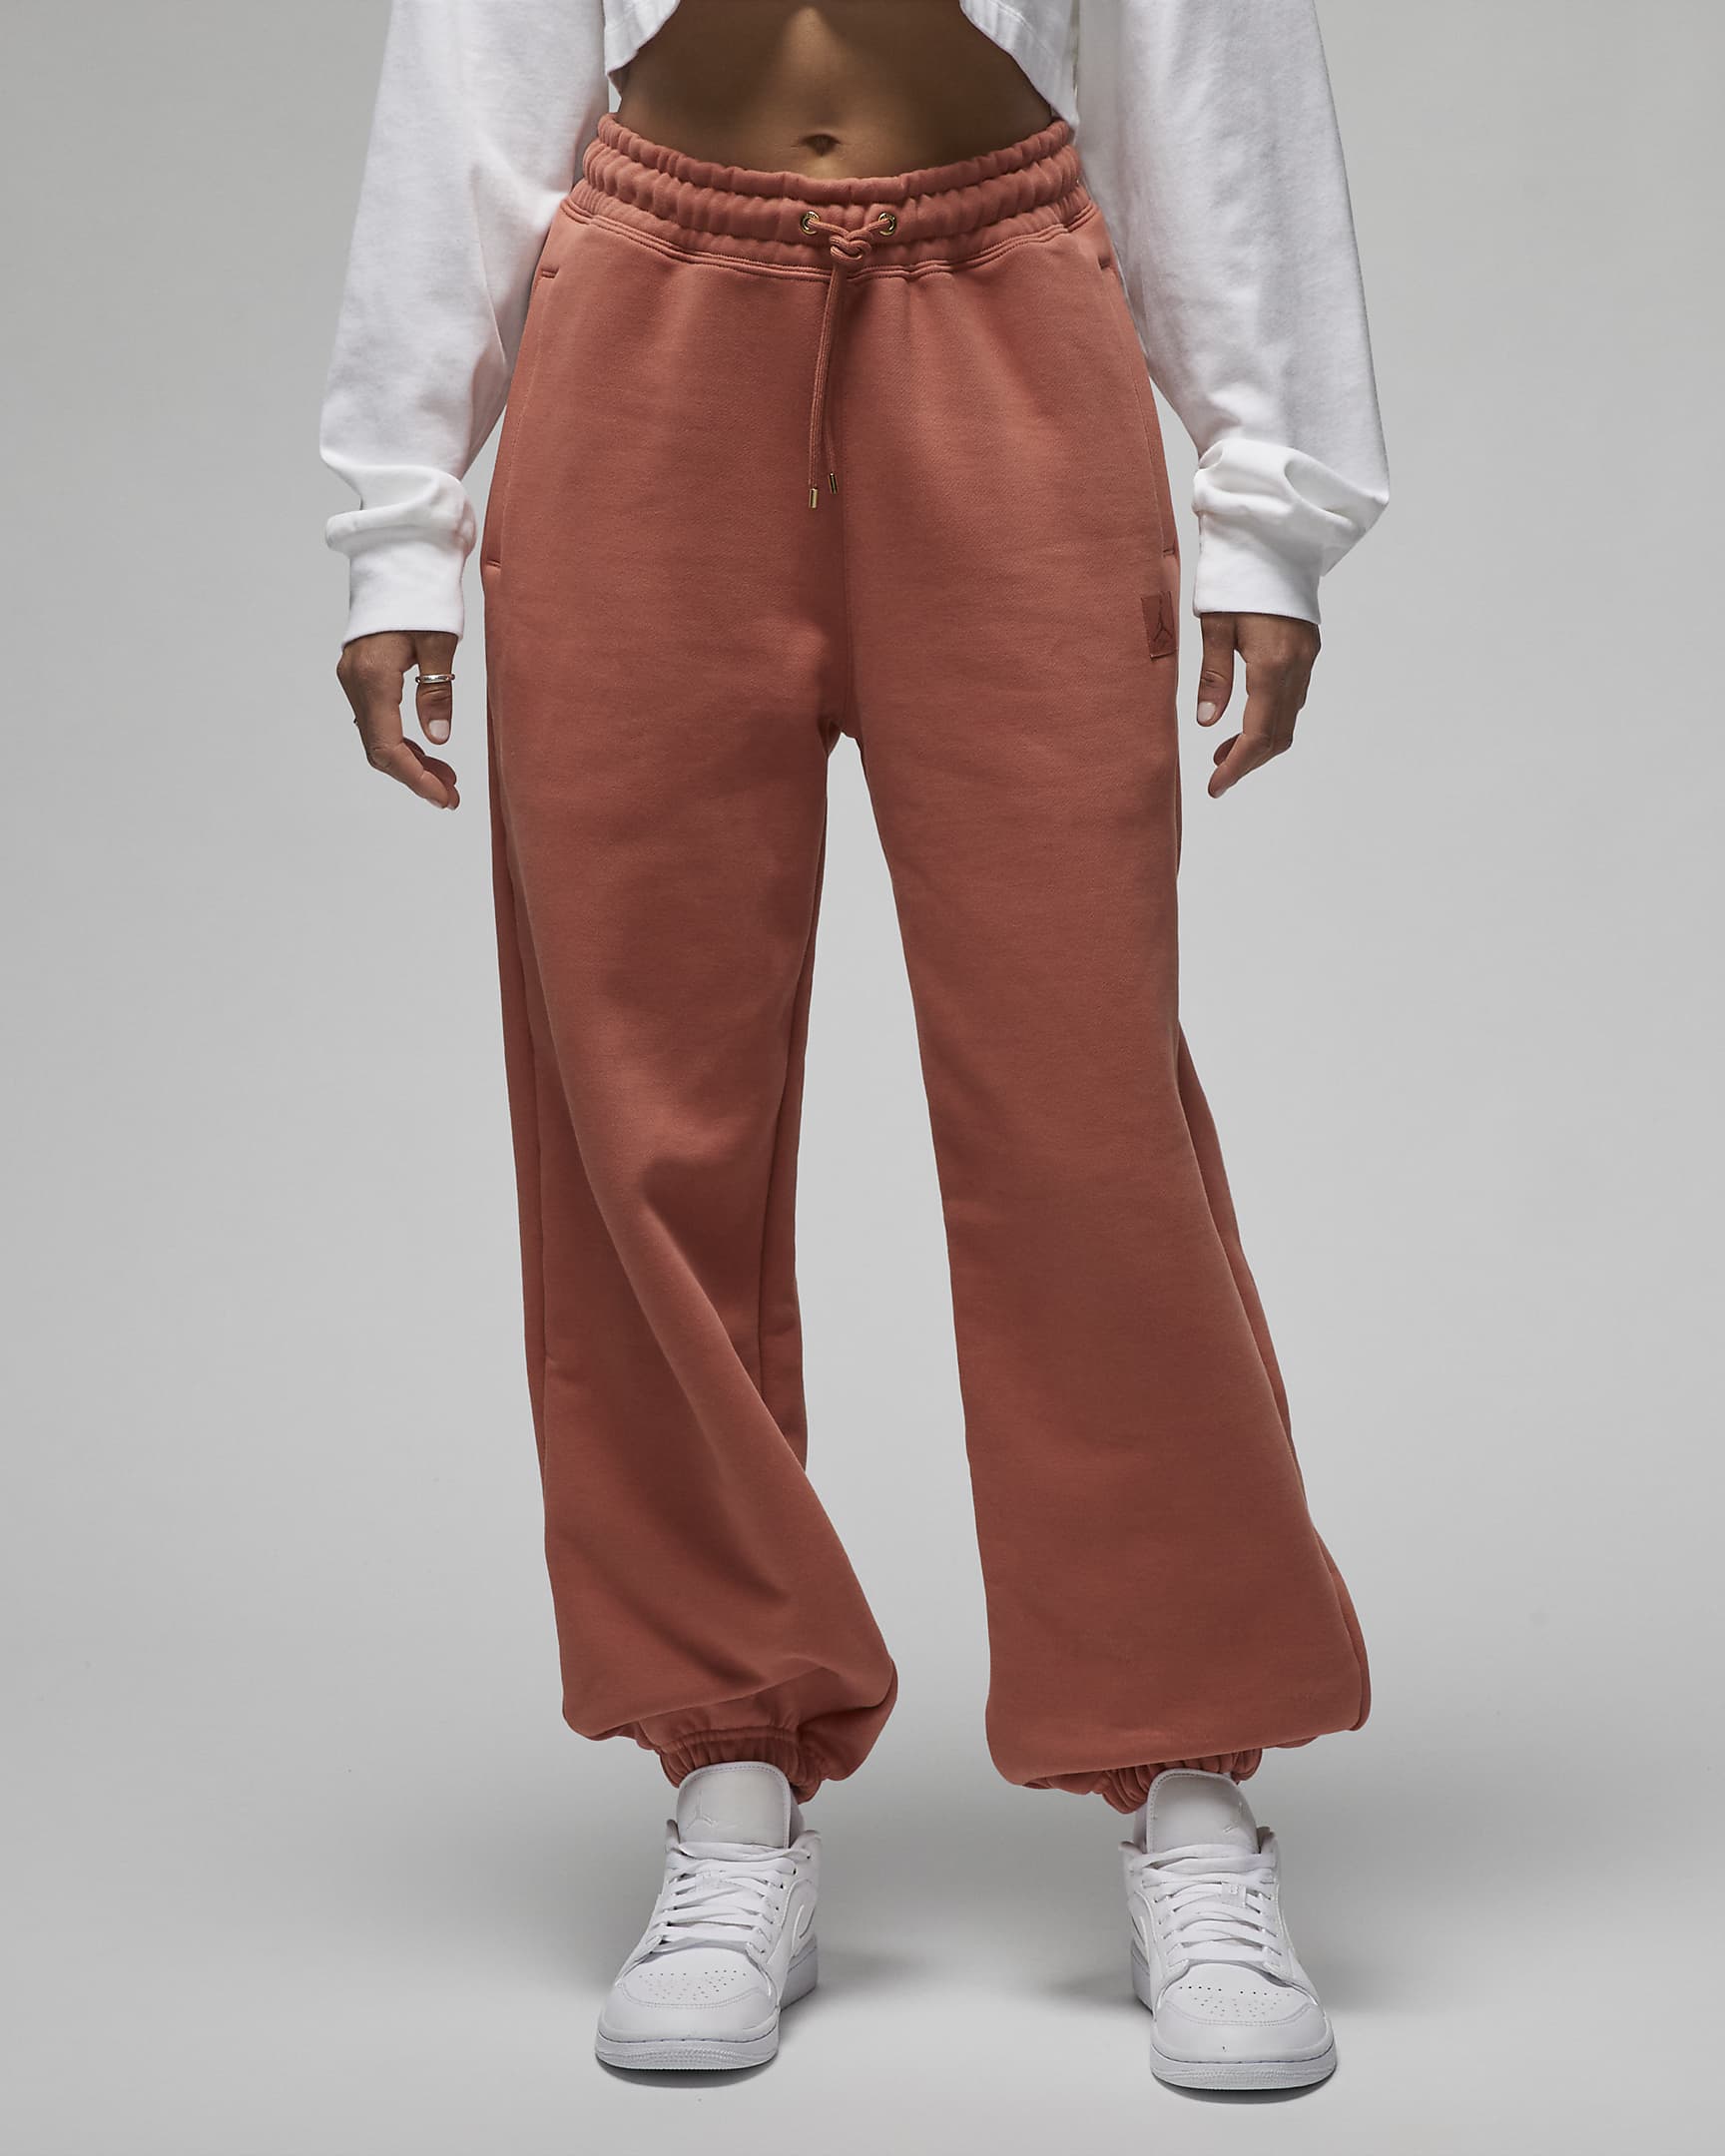 Jordan Flight Fleece Women's Trousers. Nike UK